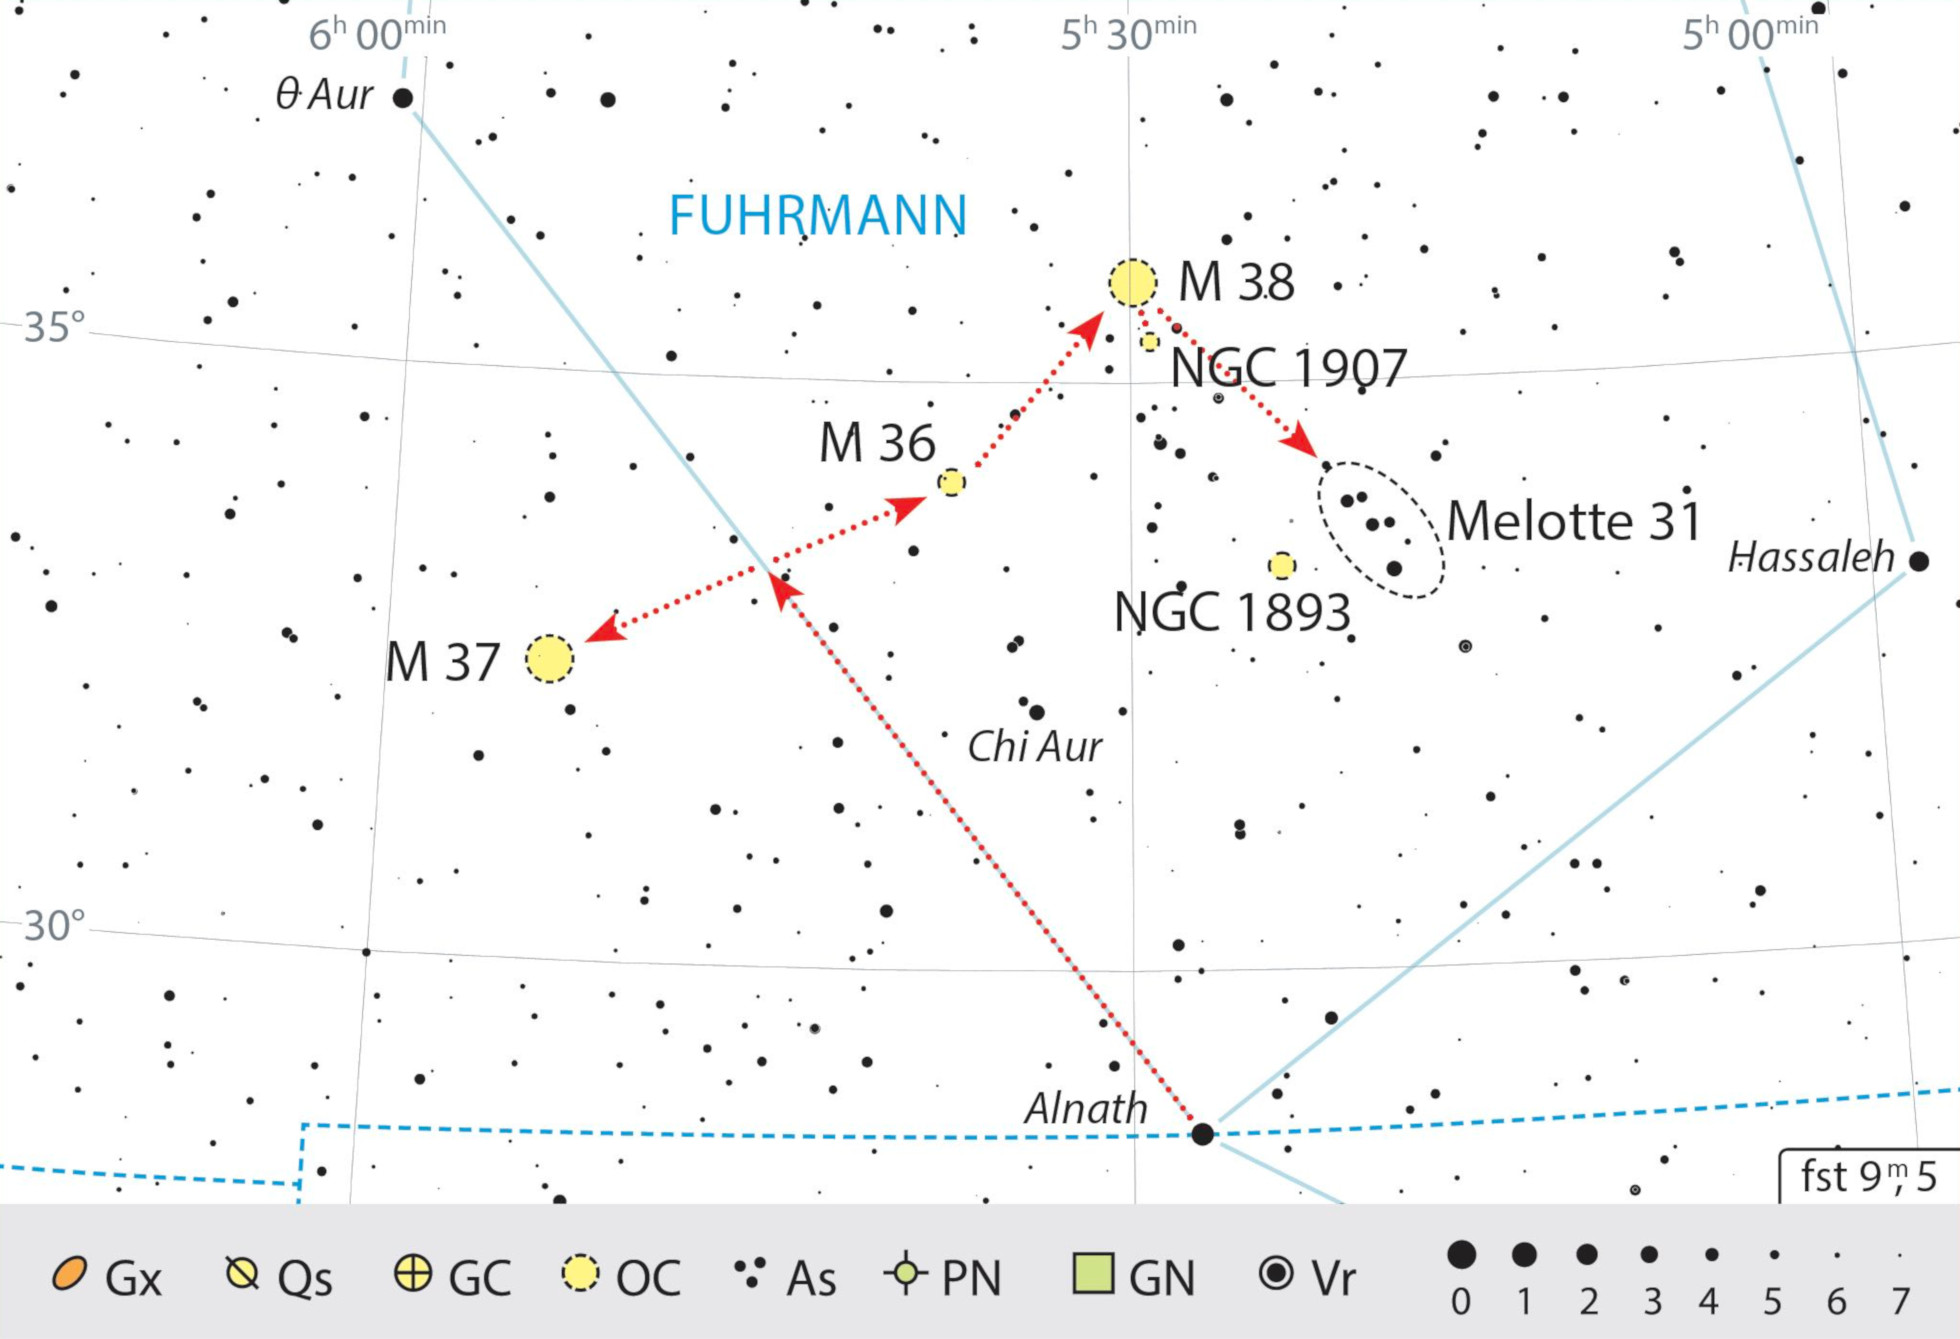 No sul da constelação Auriga, encontram-se vários aglomerados estelares interessantes próximos entre si, podendo também ser explorados com binóculos. J. Scholten 